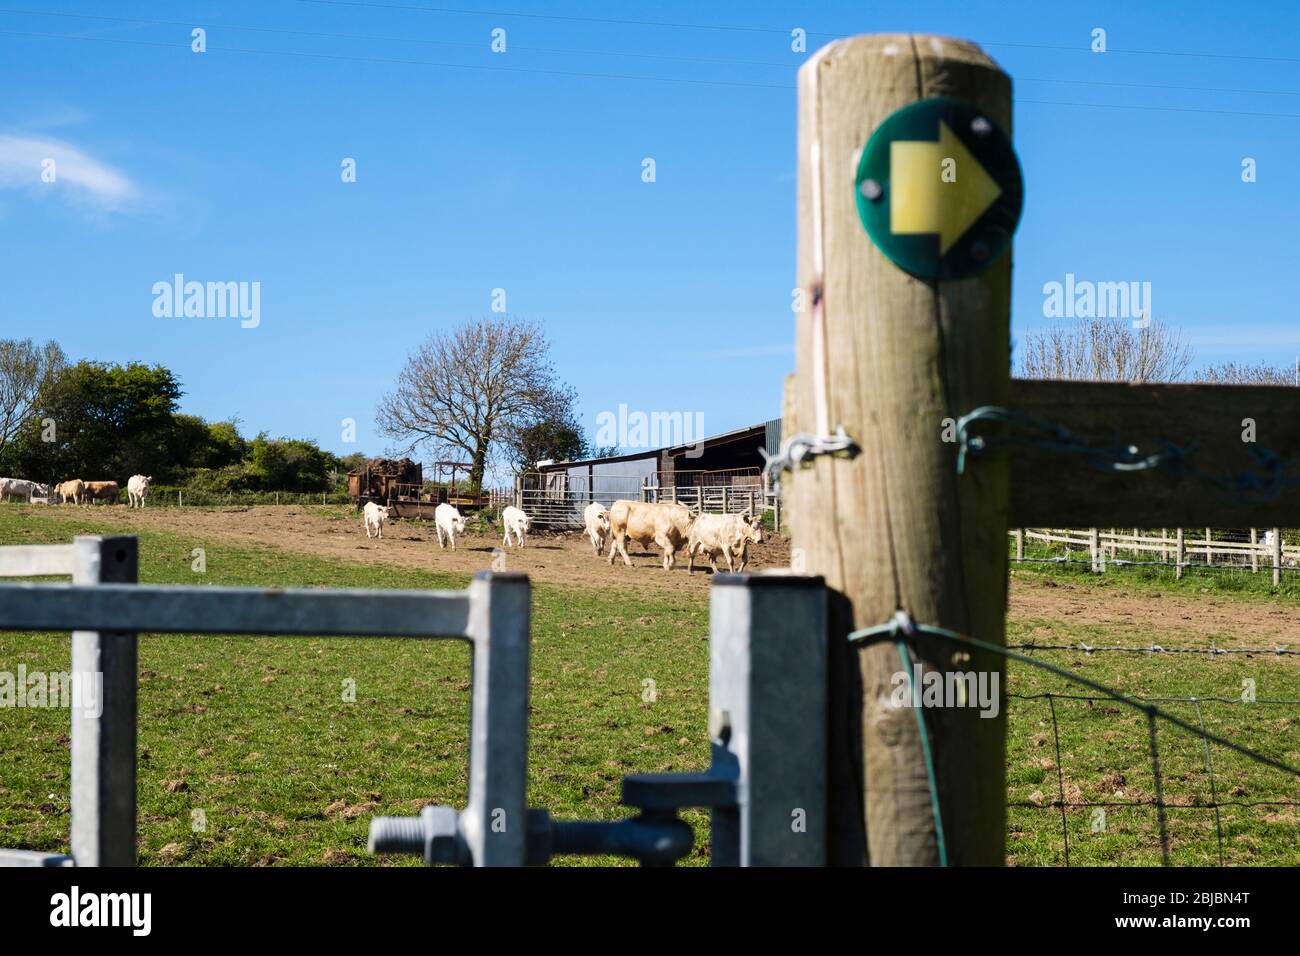 Un sentier public menant à un champ de bovins avec des vaches et des veaux de taureaux. Benllech, Île d'Anglesey, Pays de Galles du Nord, Royaume-Uni, Grande-Bretagne Banque D'Images